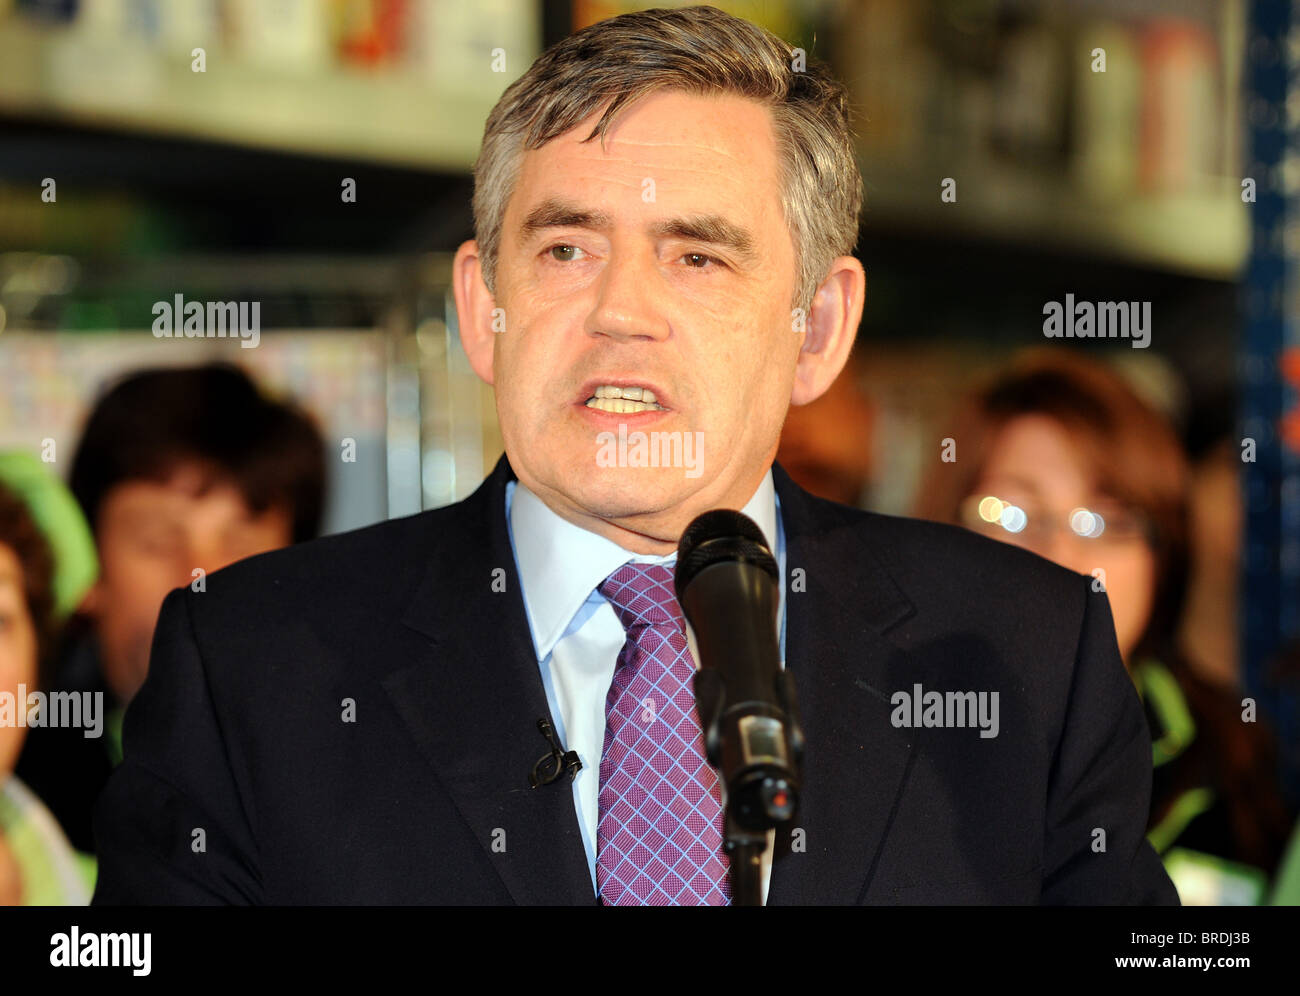 Gordon Brown MP, ancienne 'Premier ministre' de Grande-Bretagne, Royaume-Uni Banque D'Images